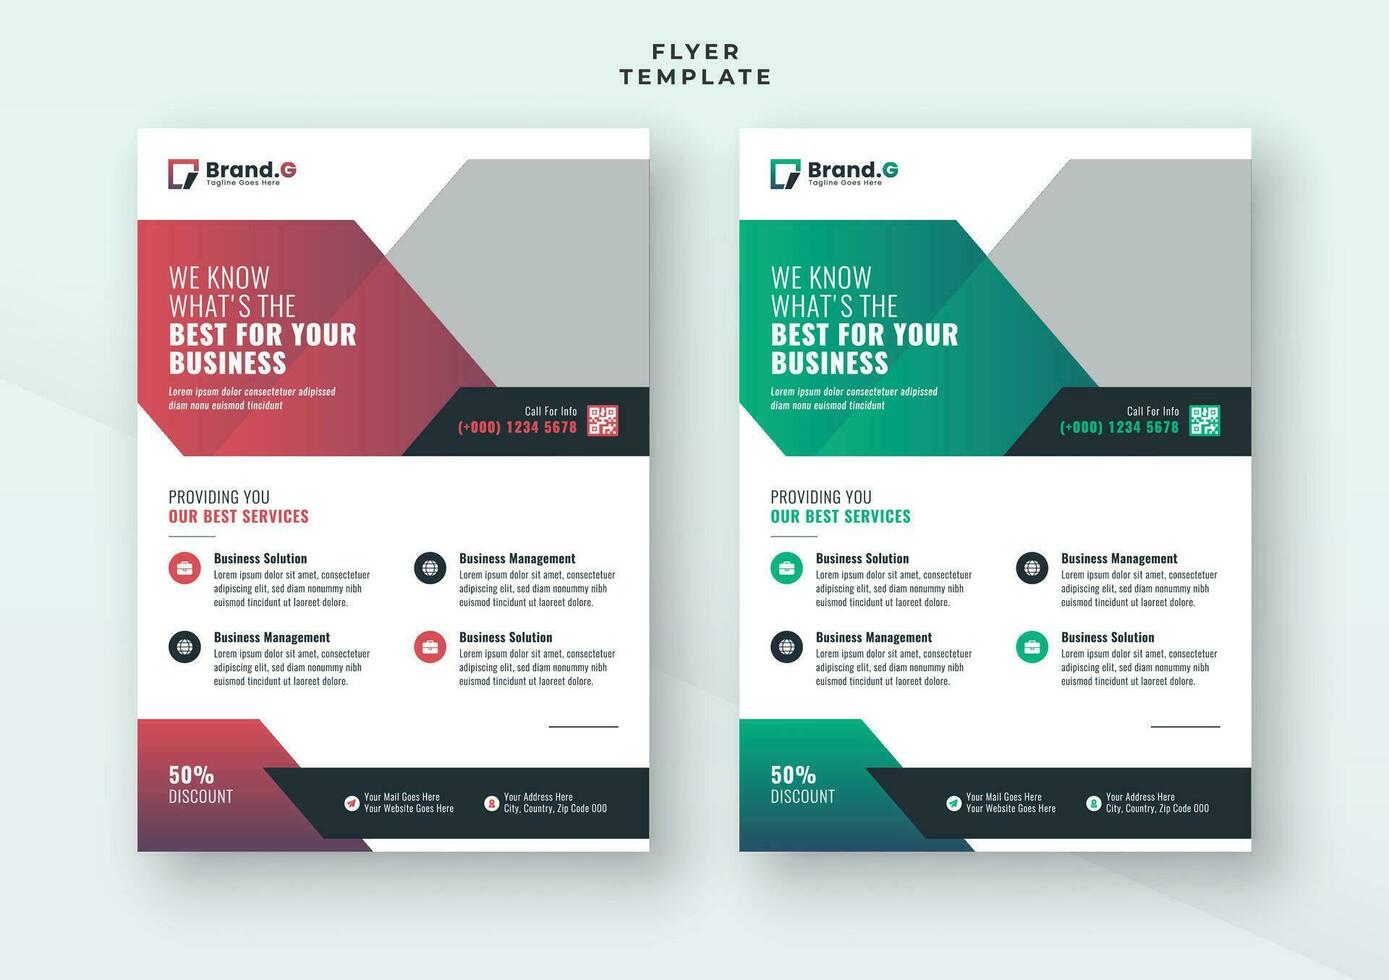 modern Geschäft kreativ geometrisch gestalten Broschüre Startseite Pamphlet Werbung Flyer Design vektor